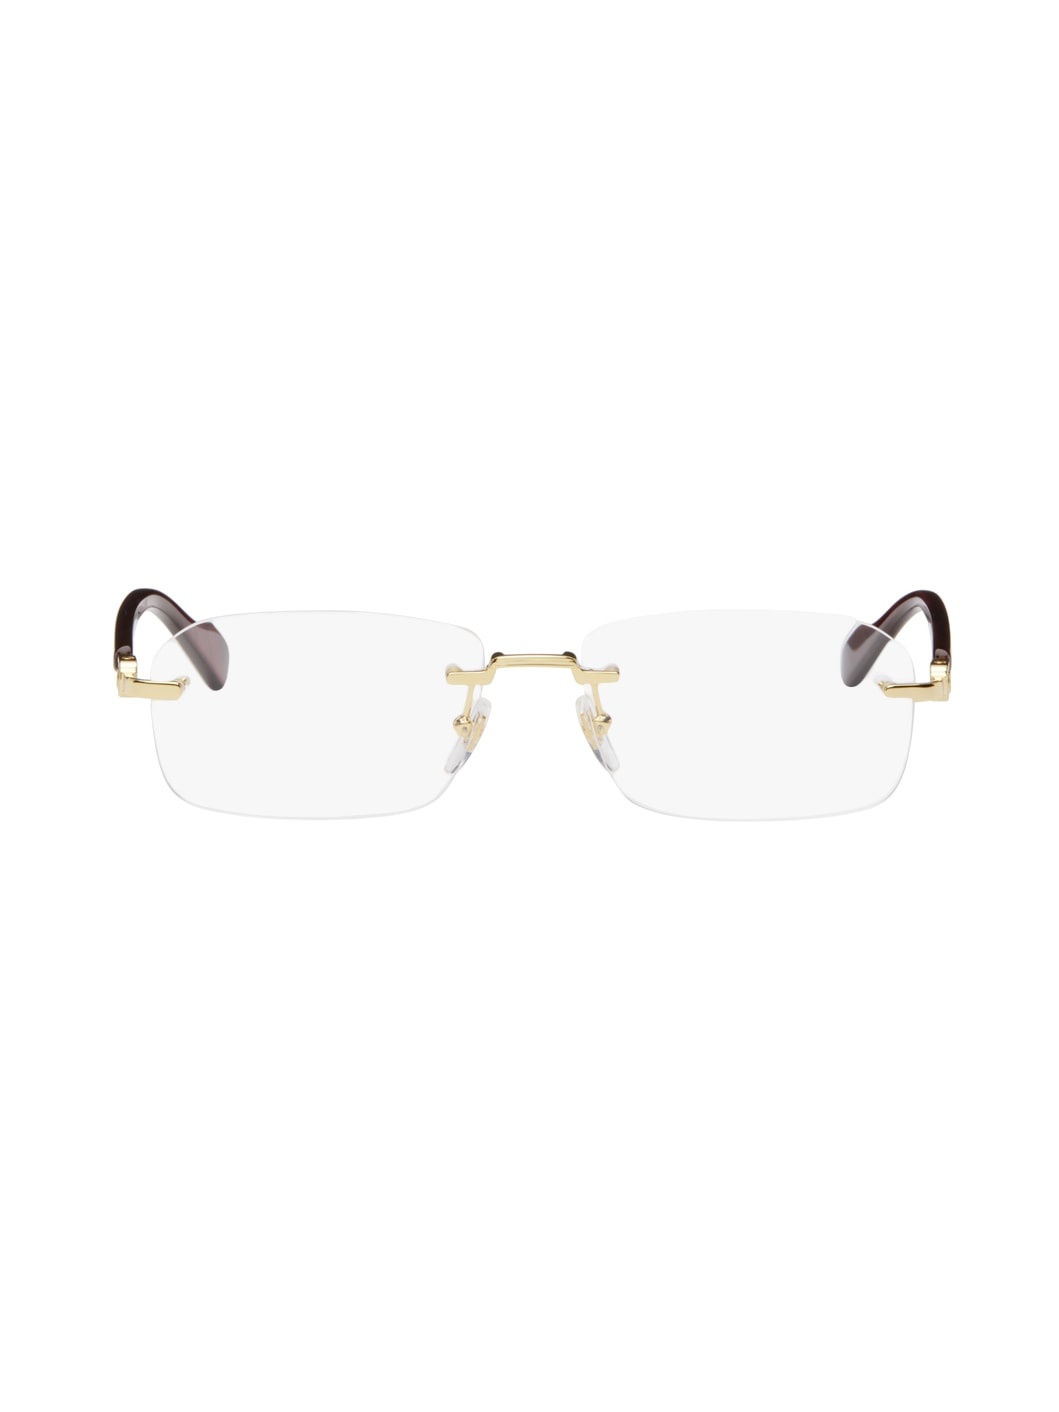 Gold & Burgundy Rimless Glasses - 1